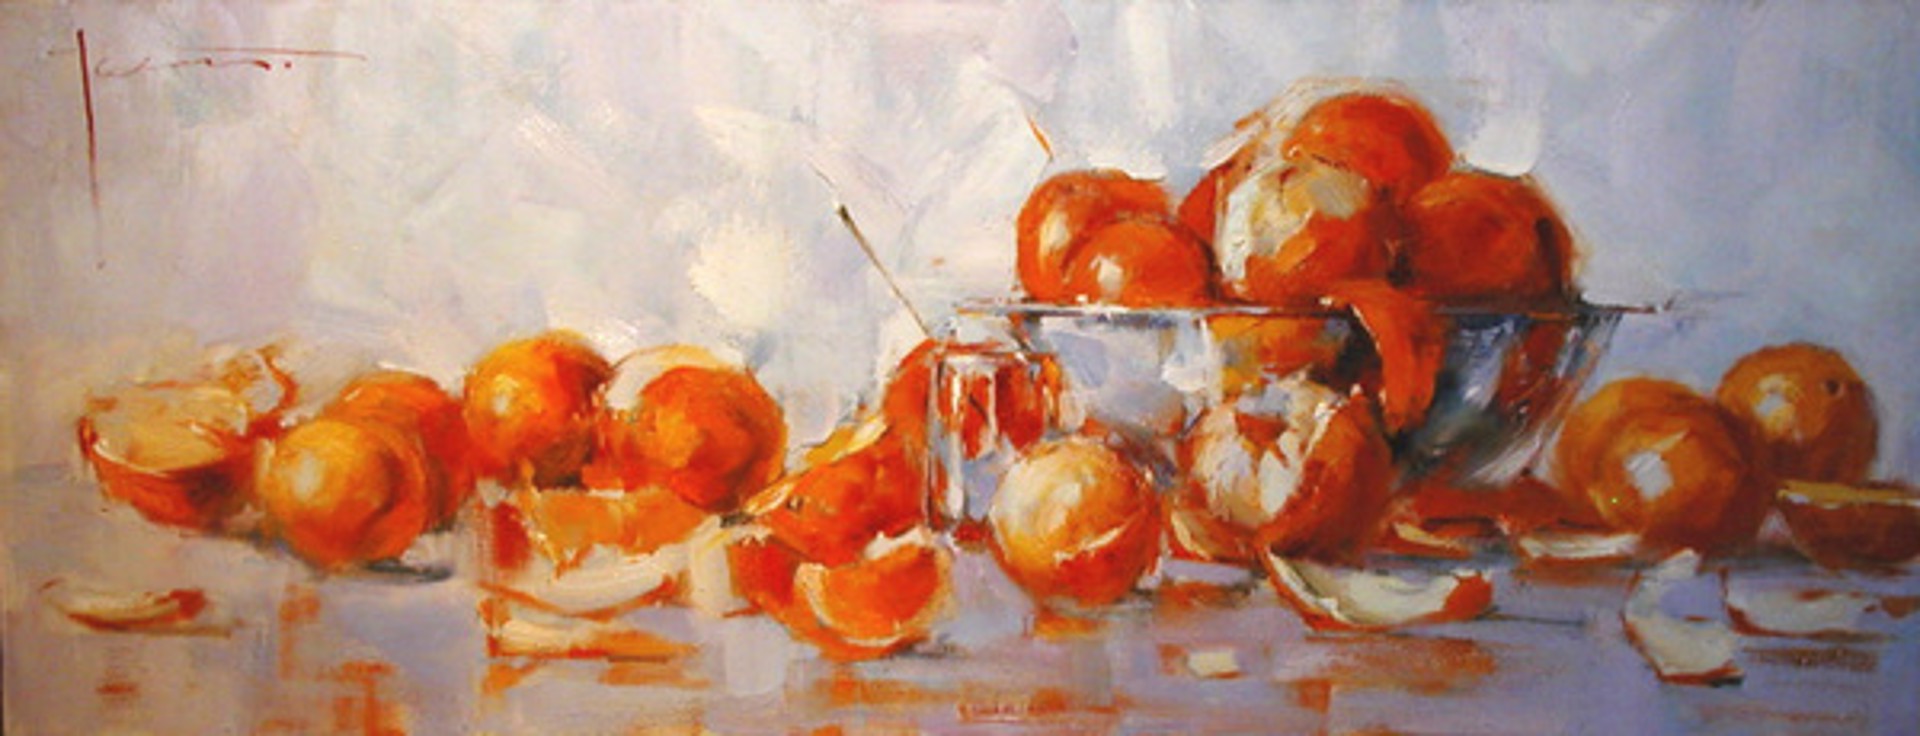 Oranges by Yana Golubyatnikova